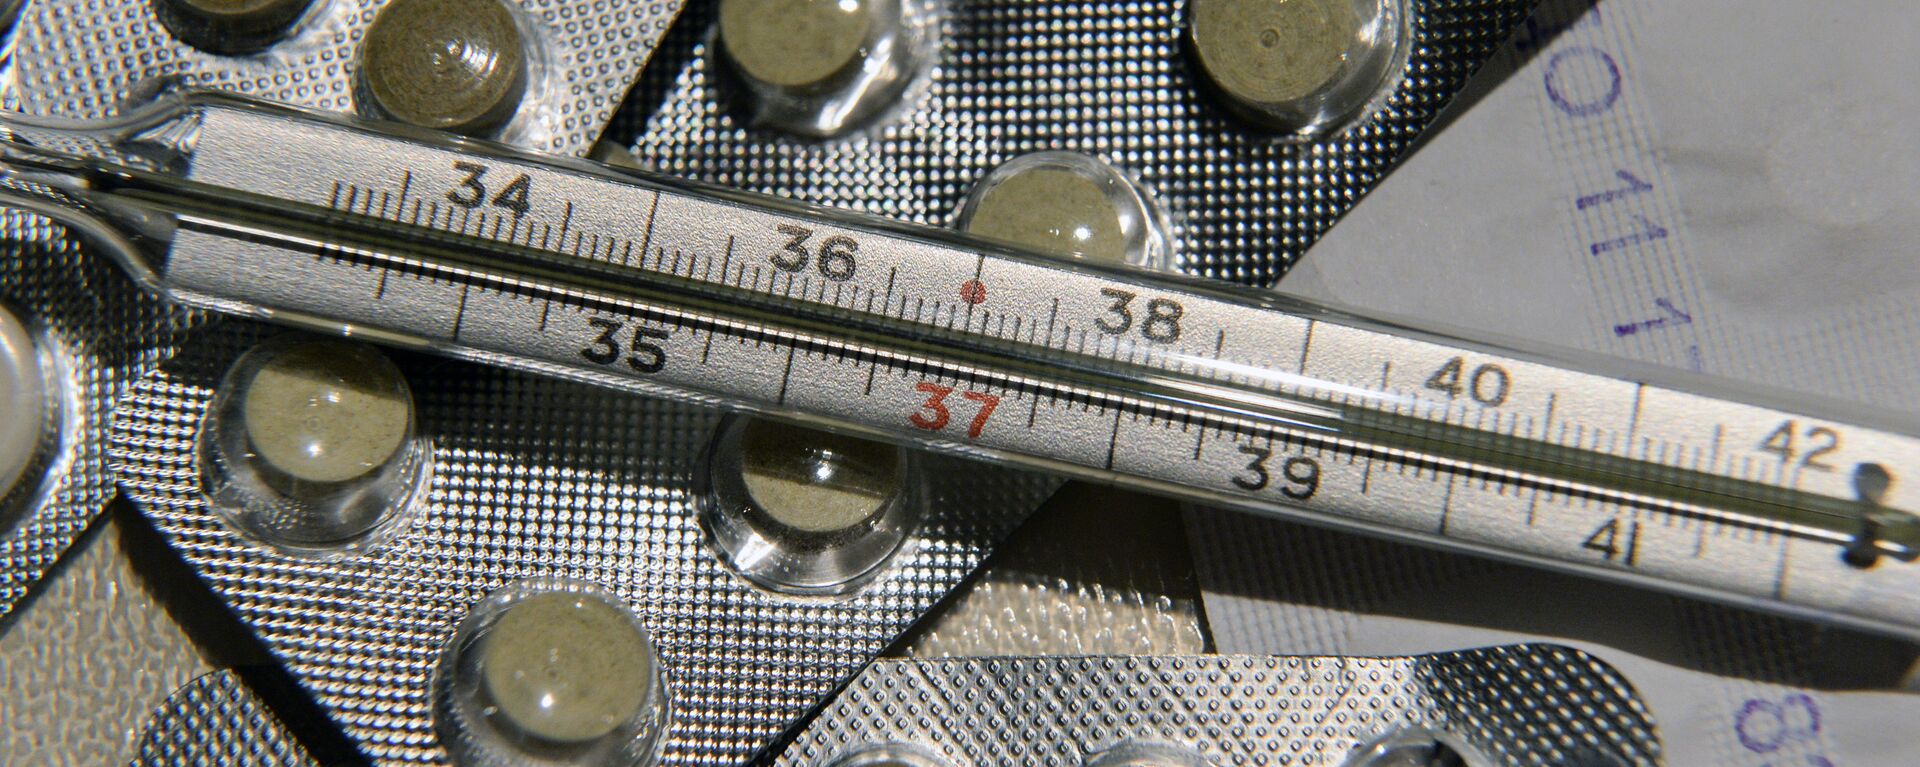 Лекарственные препараты и градусник для измерения температуры - Sputnik Latvija, 1920, 17.10.2021